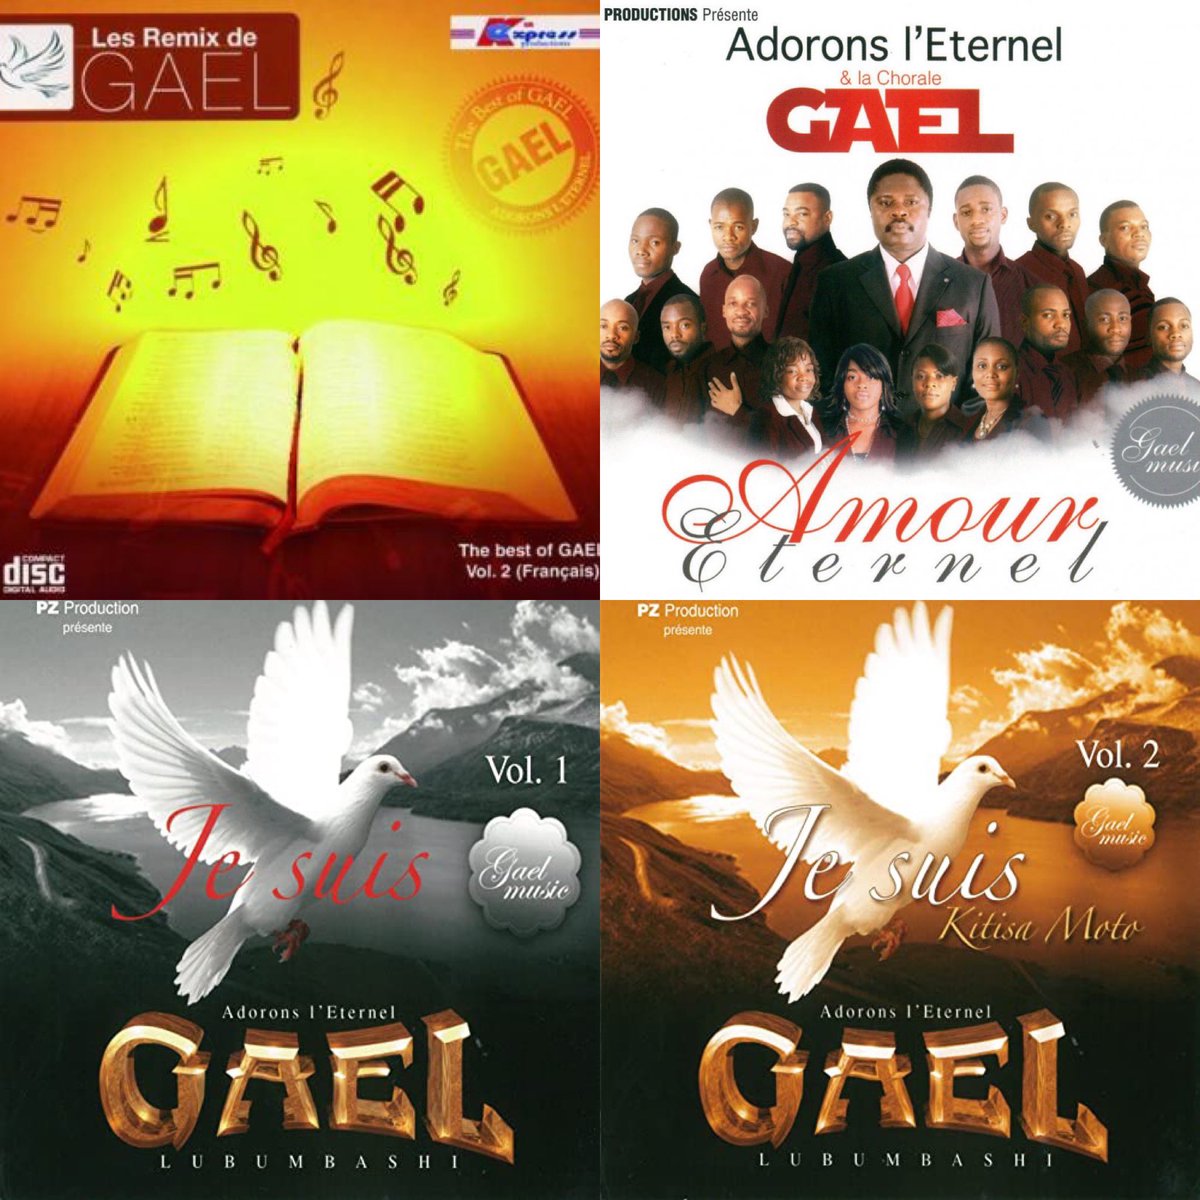 2010 : The best of Gael Vol. 22011 : Amour Eternel2013 : Je suis - vol.12014 : Je suis - vol.2